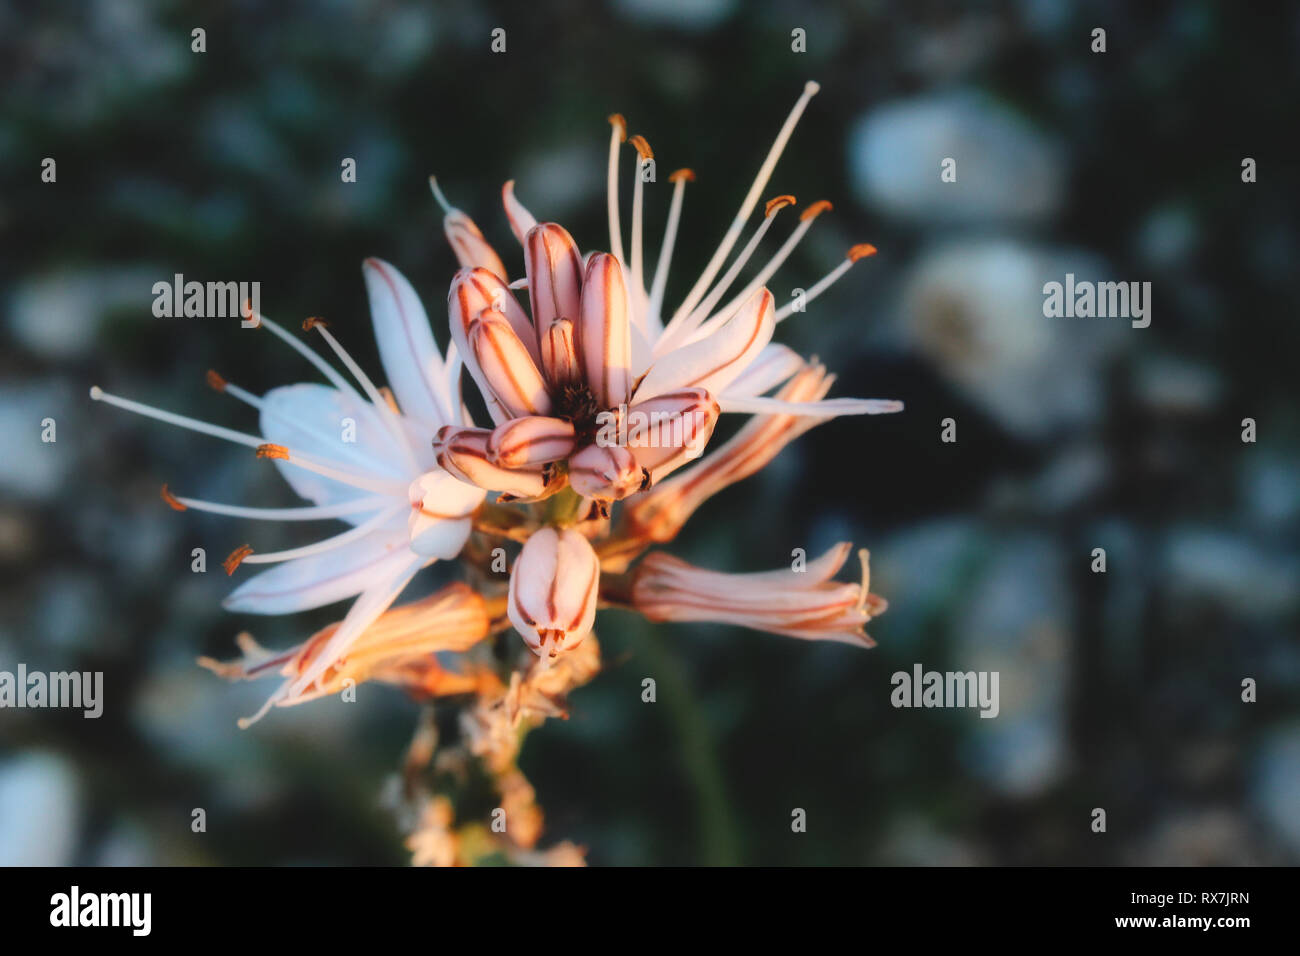 Asphodel exótica flor con fondo borroso Foto de stock